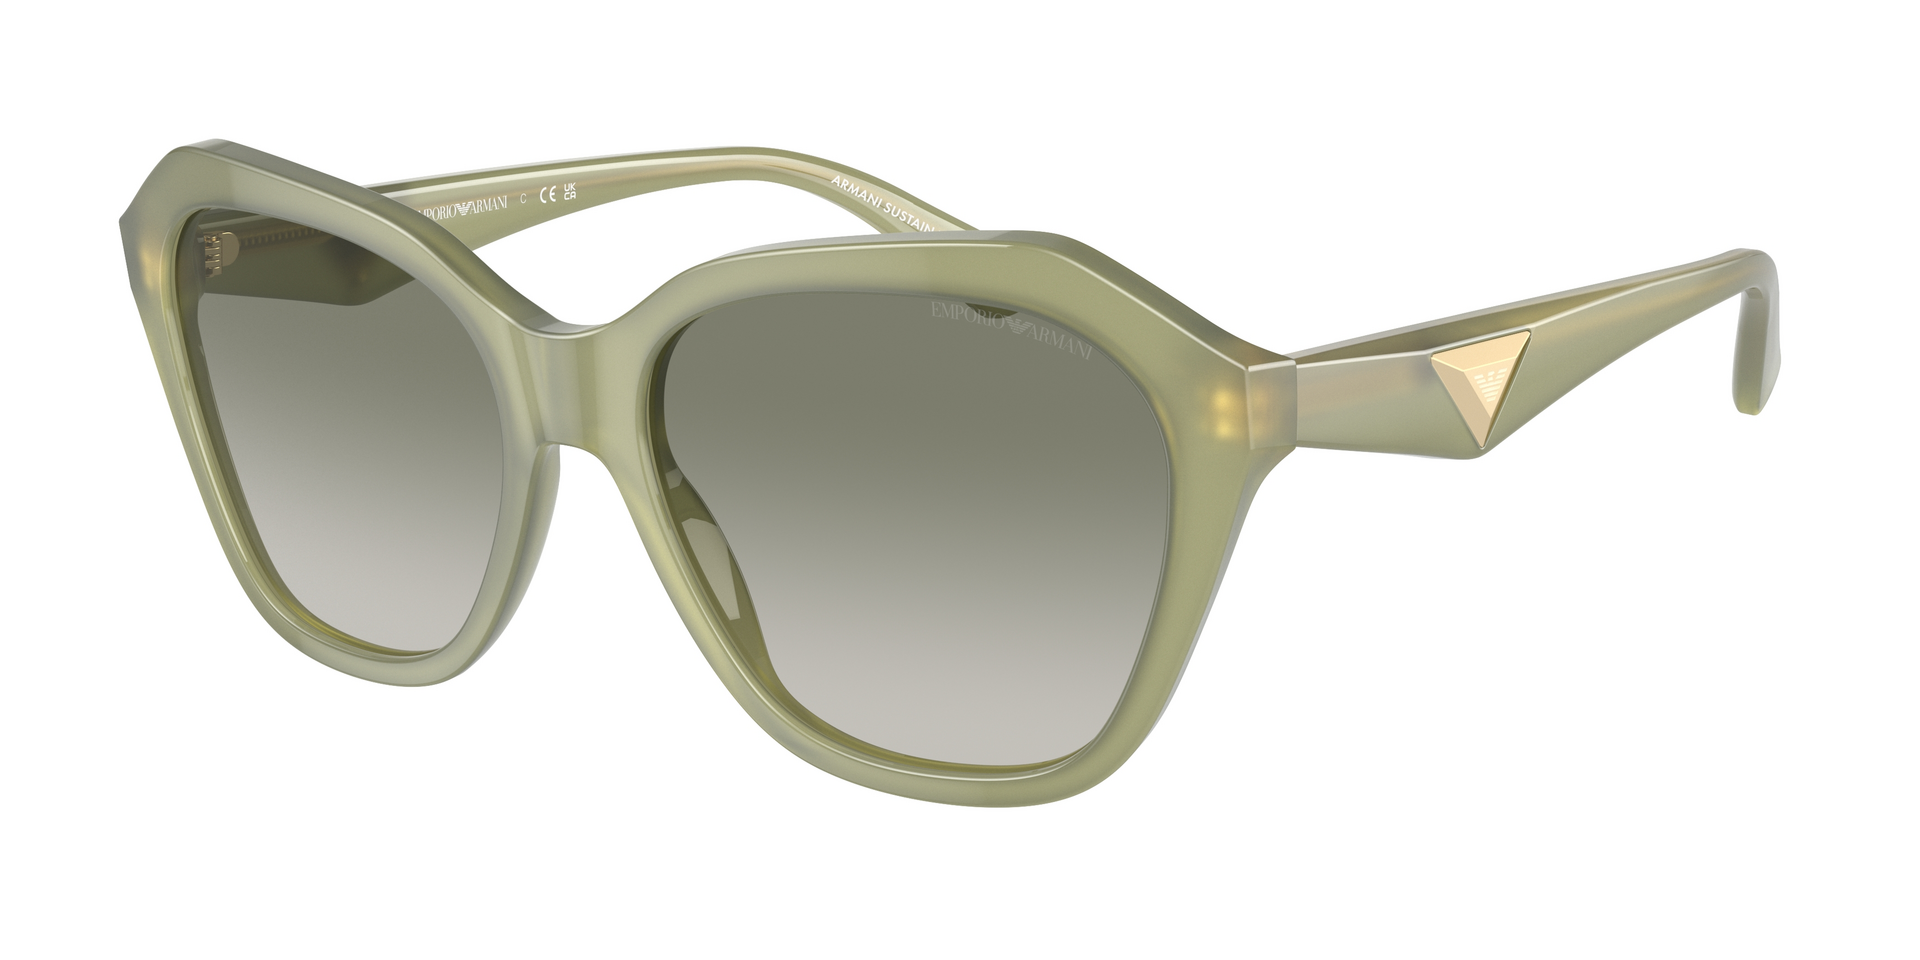 Das Bild zeigt die Sonnenbrille EA4221 61168E von der Marke Emporio Armani in grün.